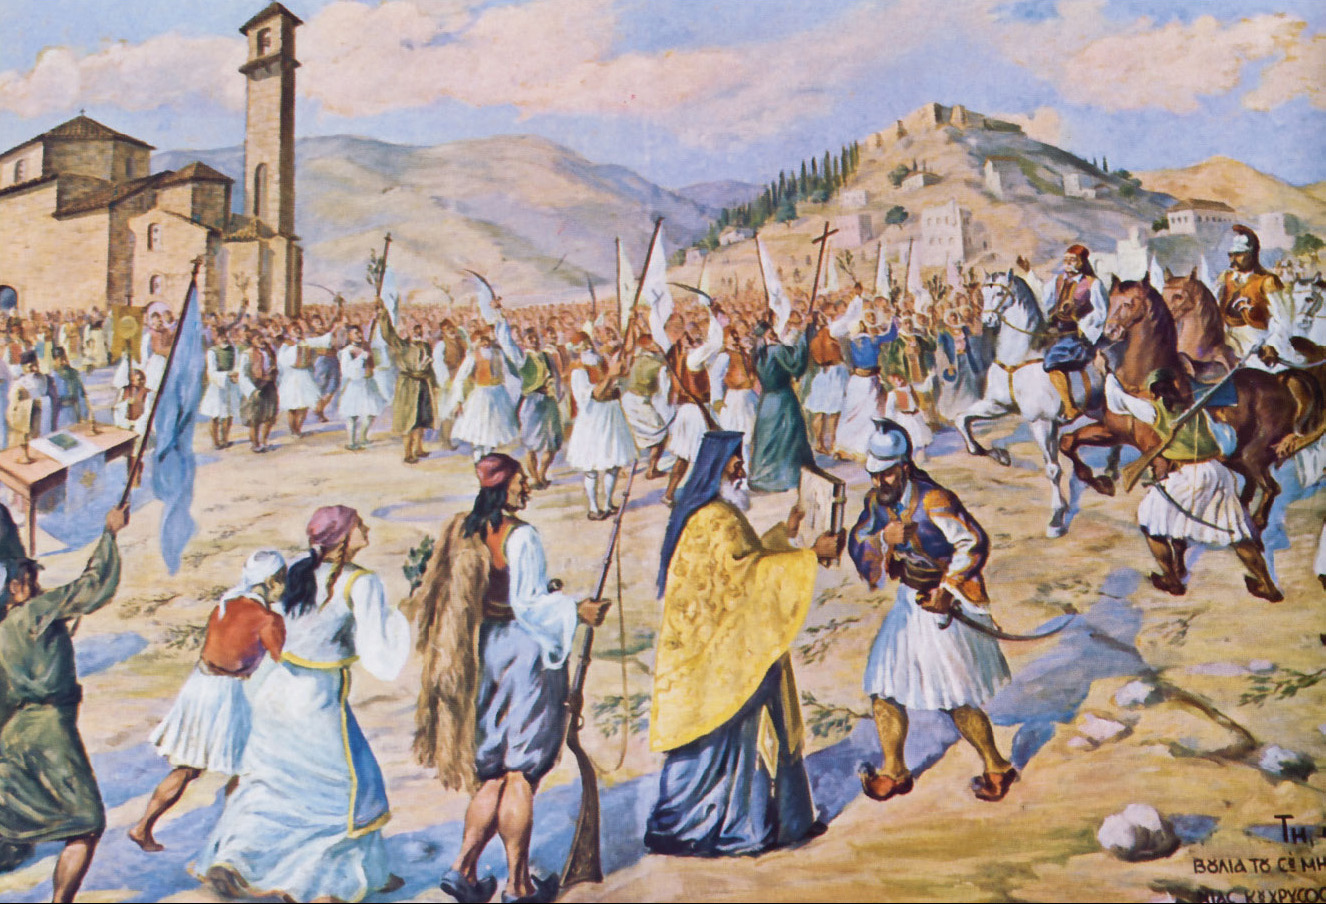 Σαν σήμερα το 1824 αρχίζει ο πρώτος εμφύλιος πόλεμος μεταξύ των επαναστατημένων Ελλήνων